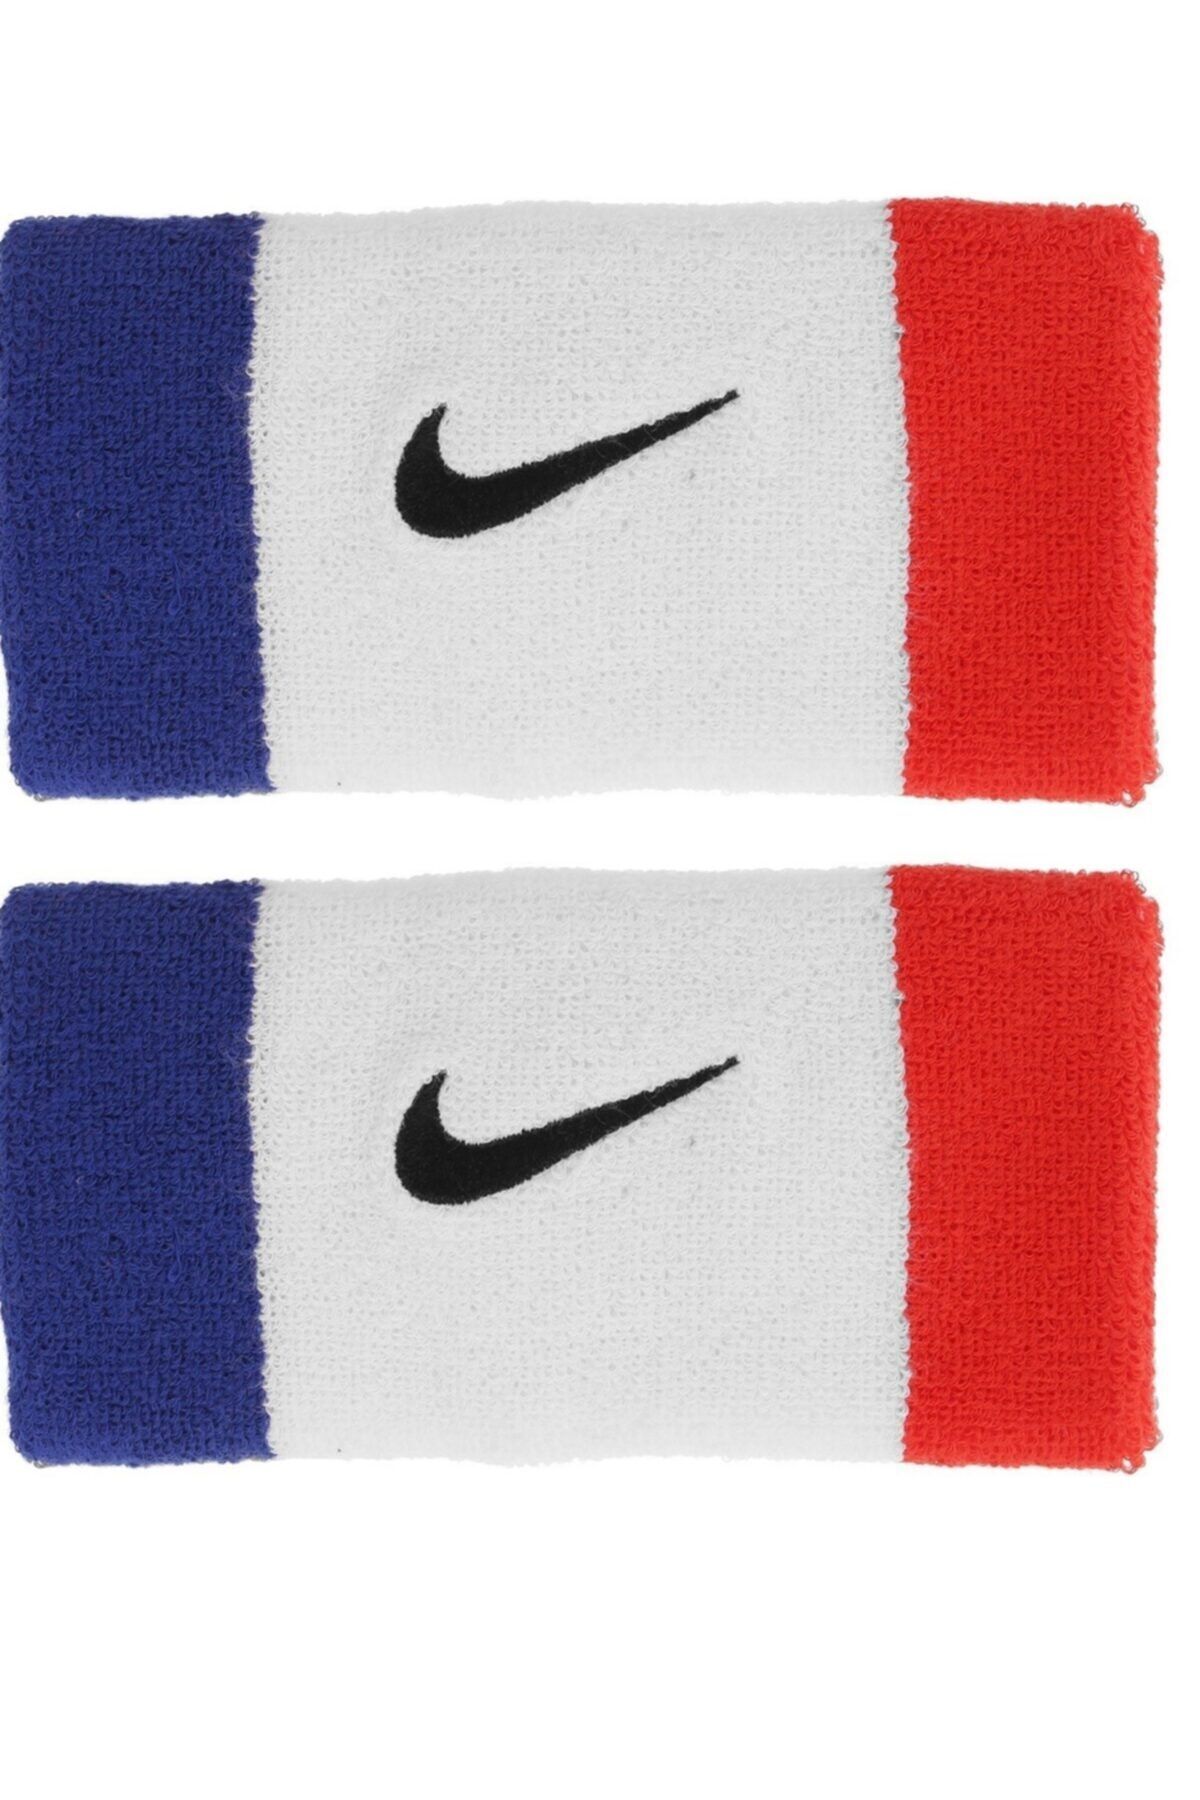 Nike Nıke Swoosh Double Wıde Bileklik Mavi Beyaz Kırmızı